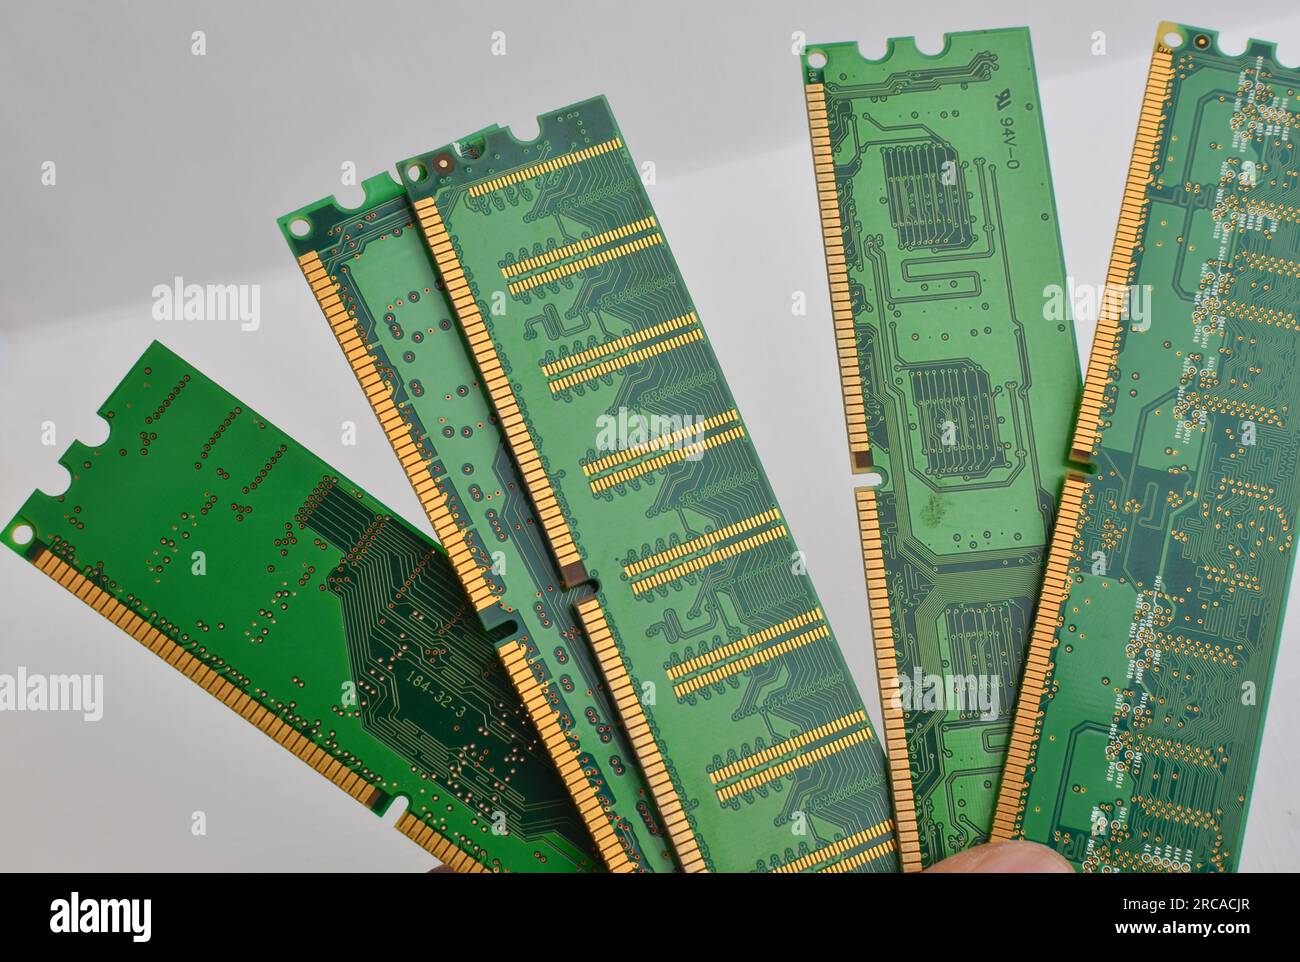 Détail d'une mémoire RAM DDR4, en gros plan, avec un fond clair, montrant la technologie de pointe utilisée dans les appareils électroniques. Banque D'Images